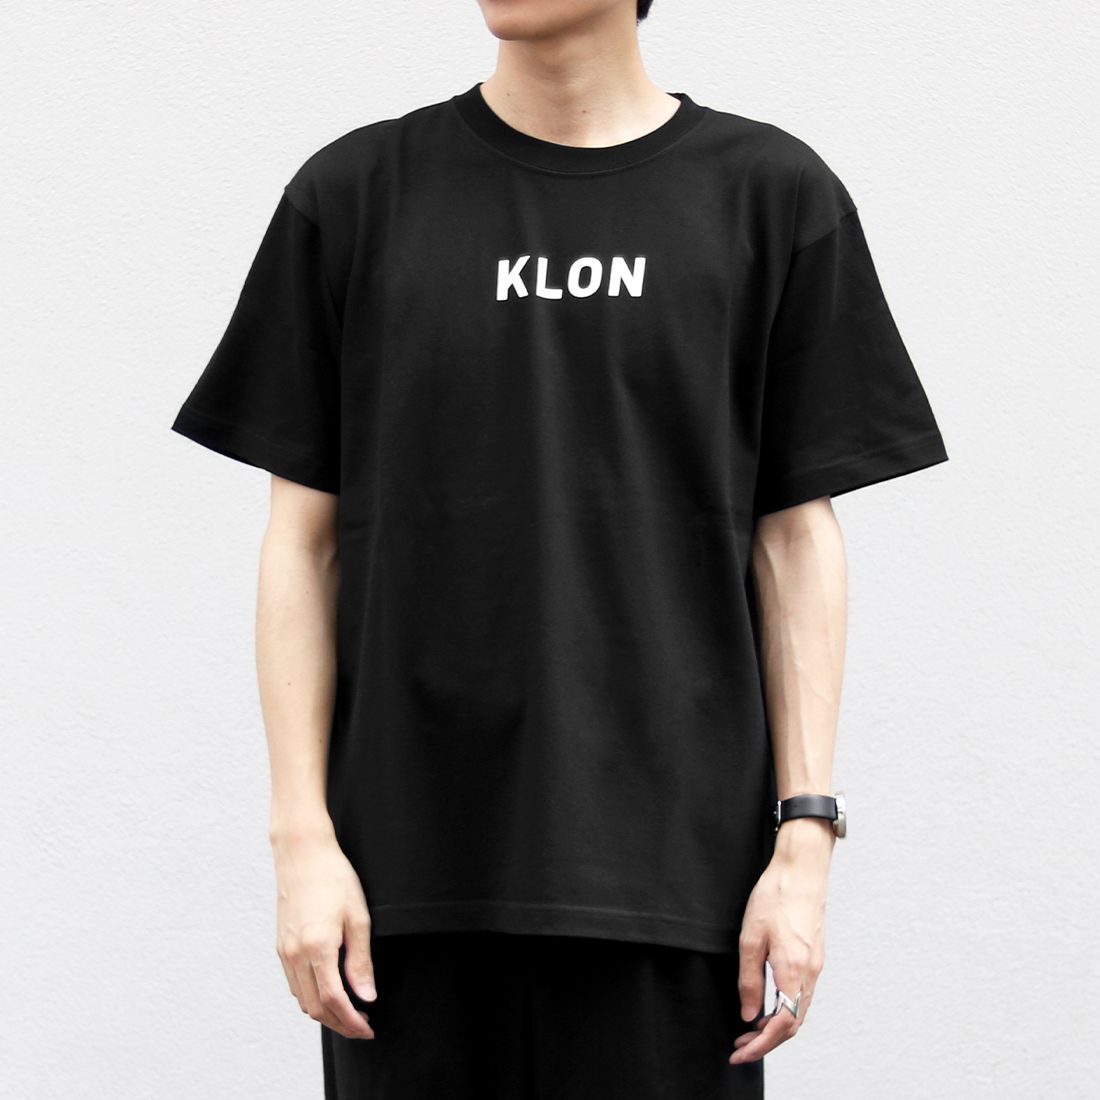 楽天市場 Tshirts Small Logo Black Klon クローン Tシャツ 半そで シンプル おしゃれ 個性的 かわいい ギフト 記念日 誕生日 腕時計 インテリア雑貨 Jam Store